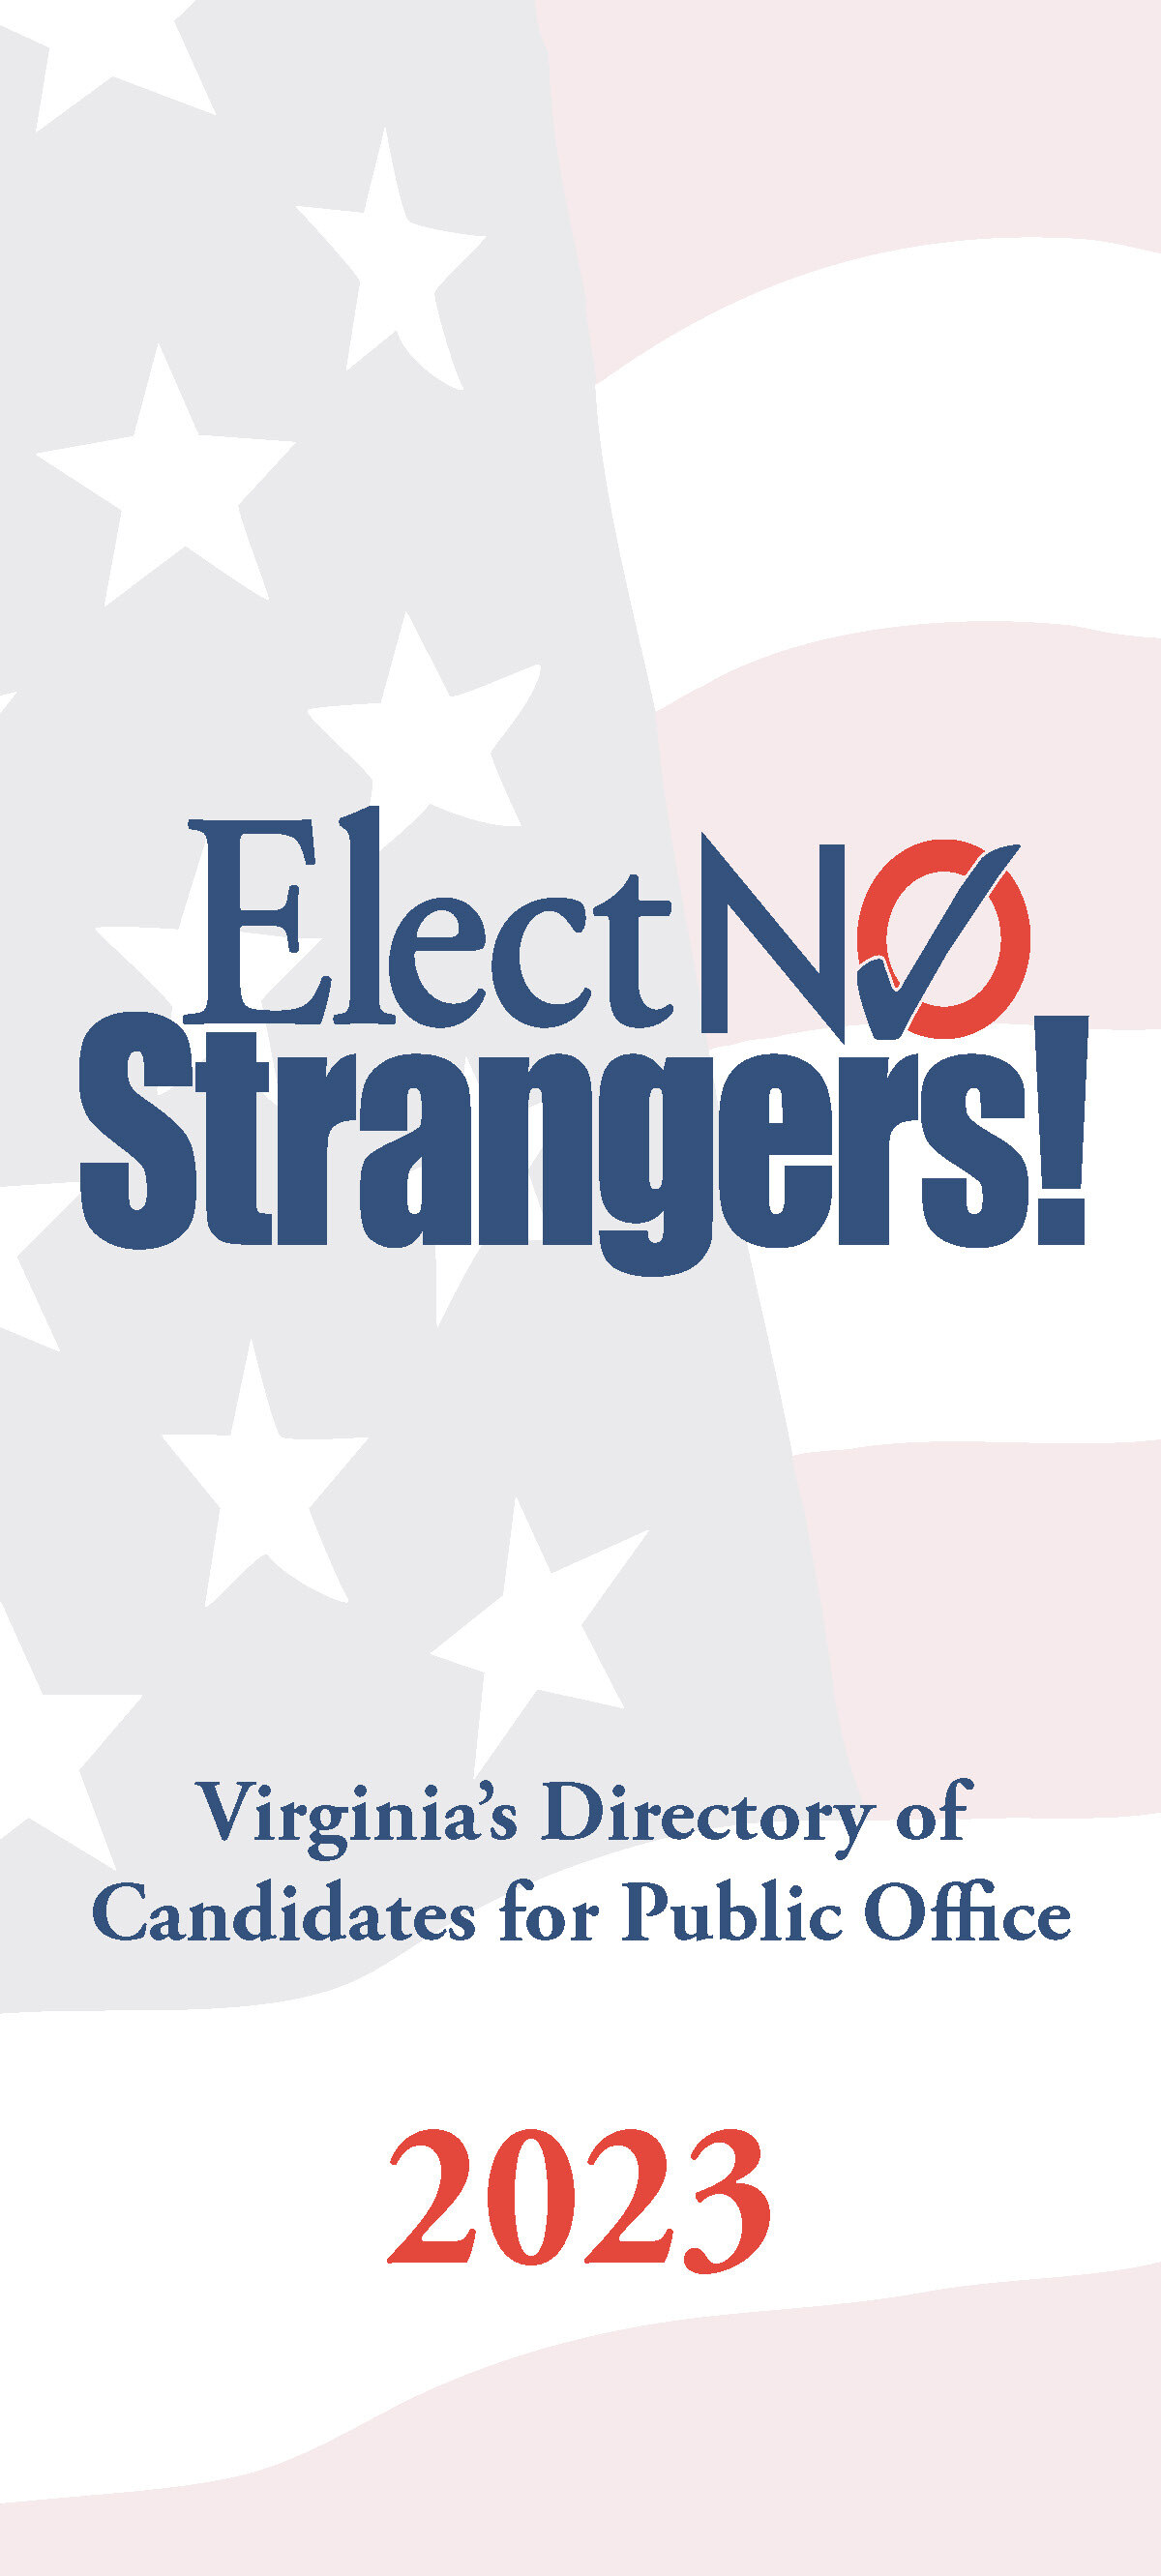 Elect No Strangers! (The Blue Book)